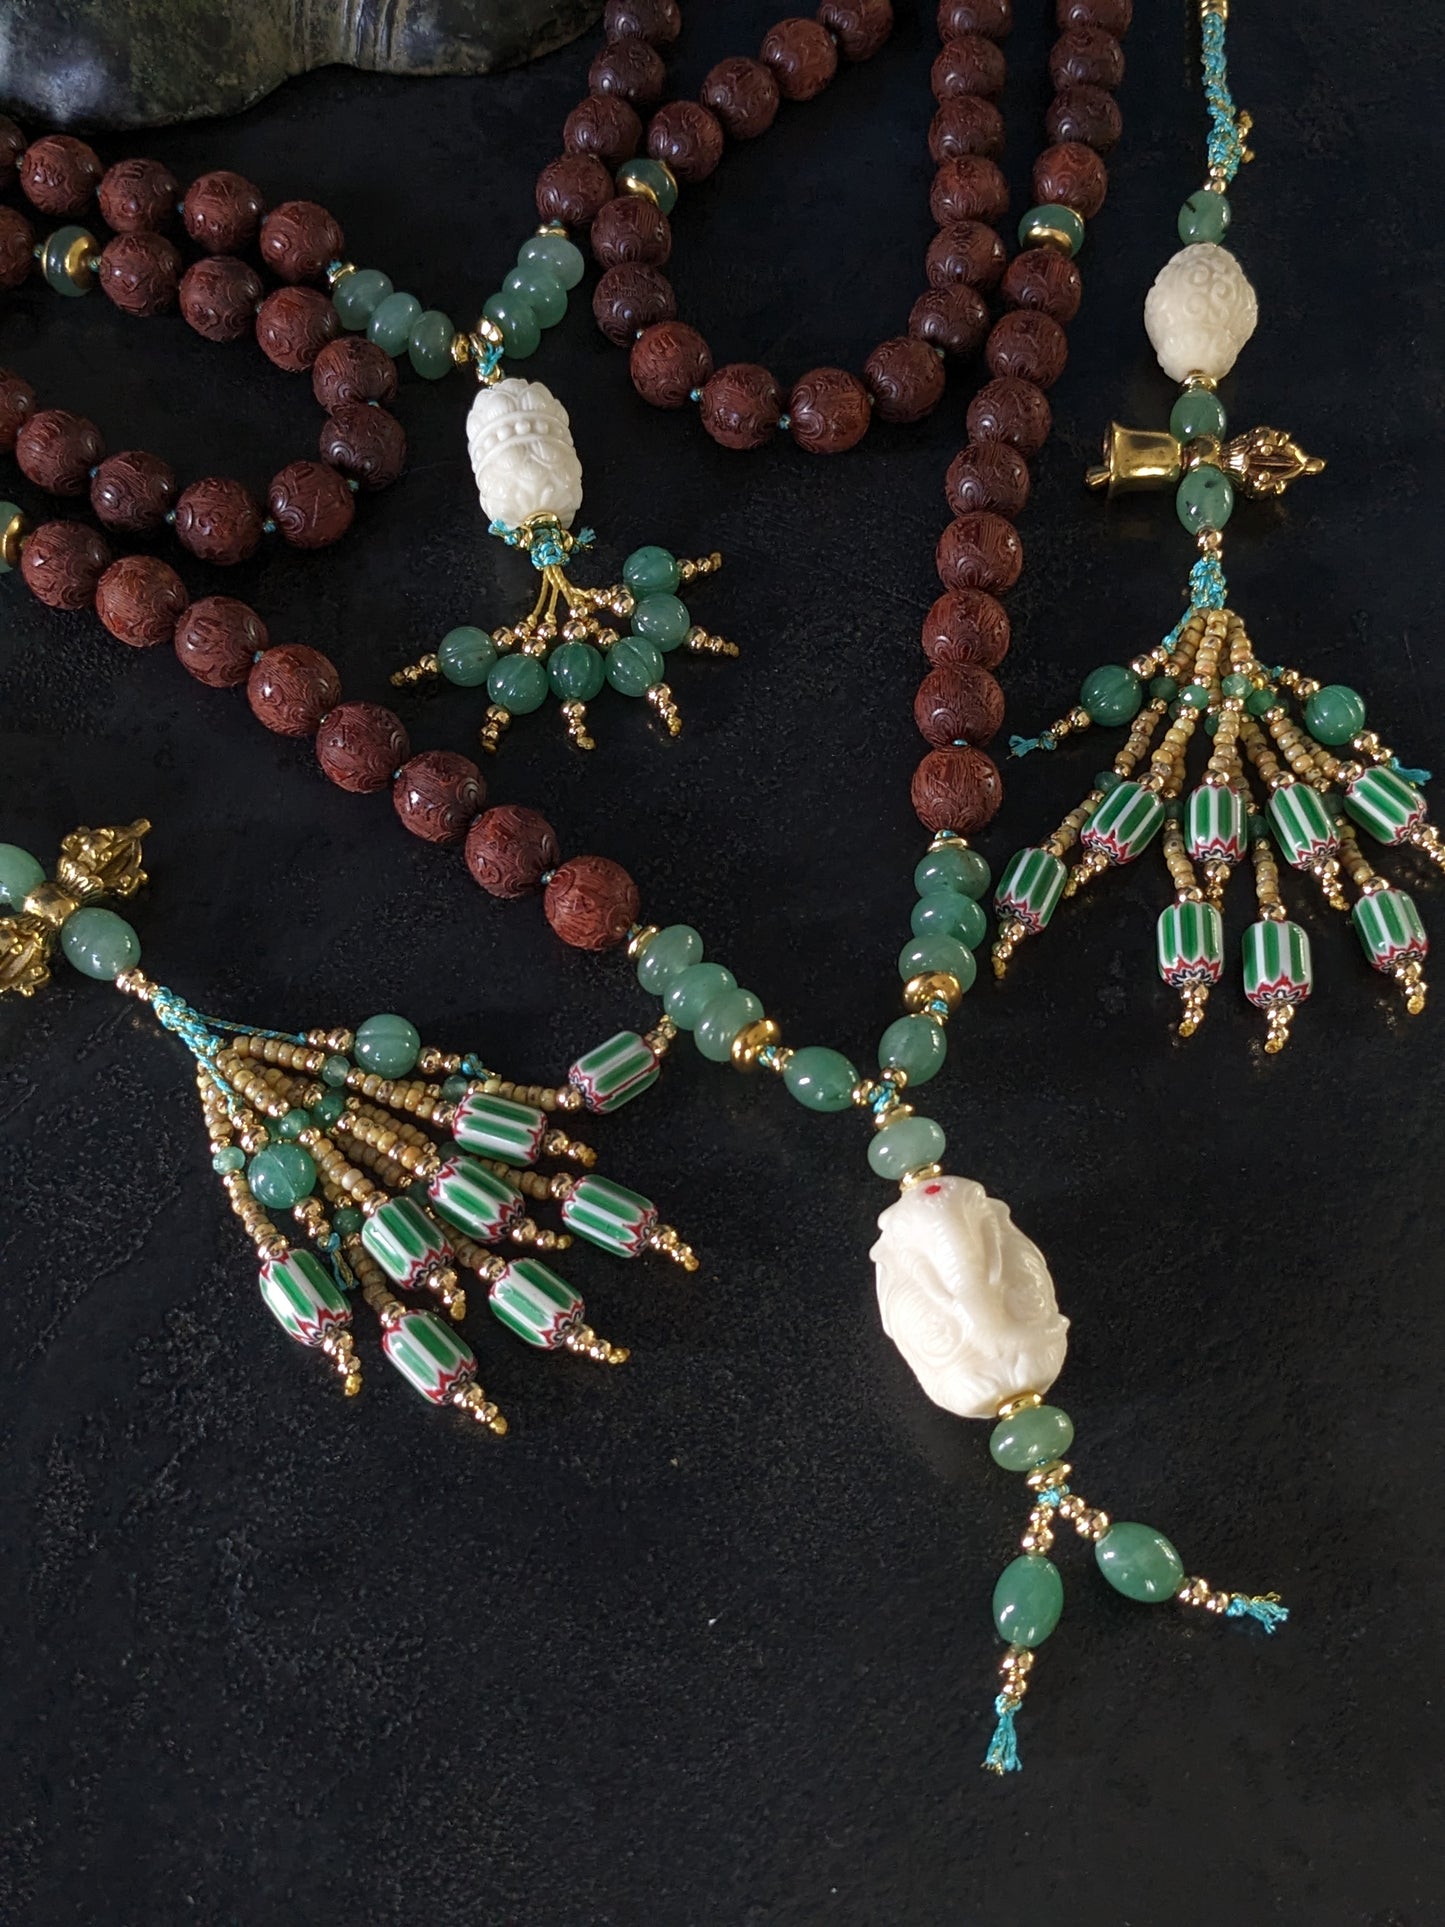 Chapelet bouddhiste Mala Kanchipuram artisanal, orné de perles d'aventurine vertes éclatantes et de bois de santal rouge riche. Un bijou spirituel unique qui respire la chaleur et le savoir-faire.